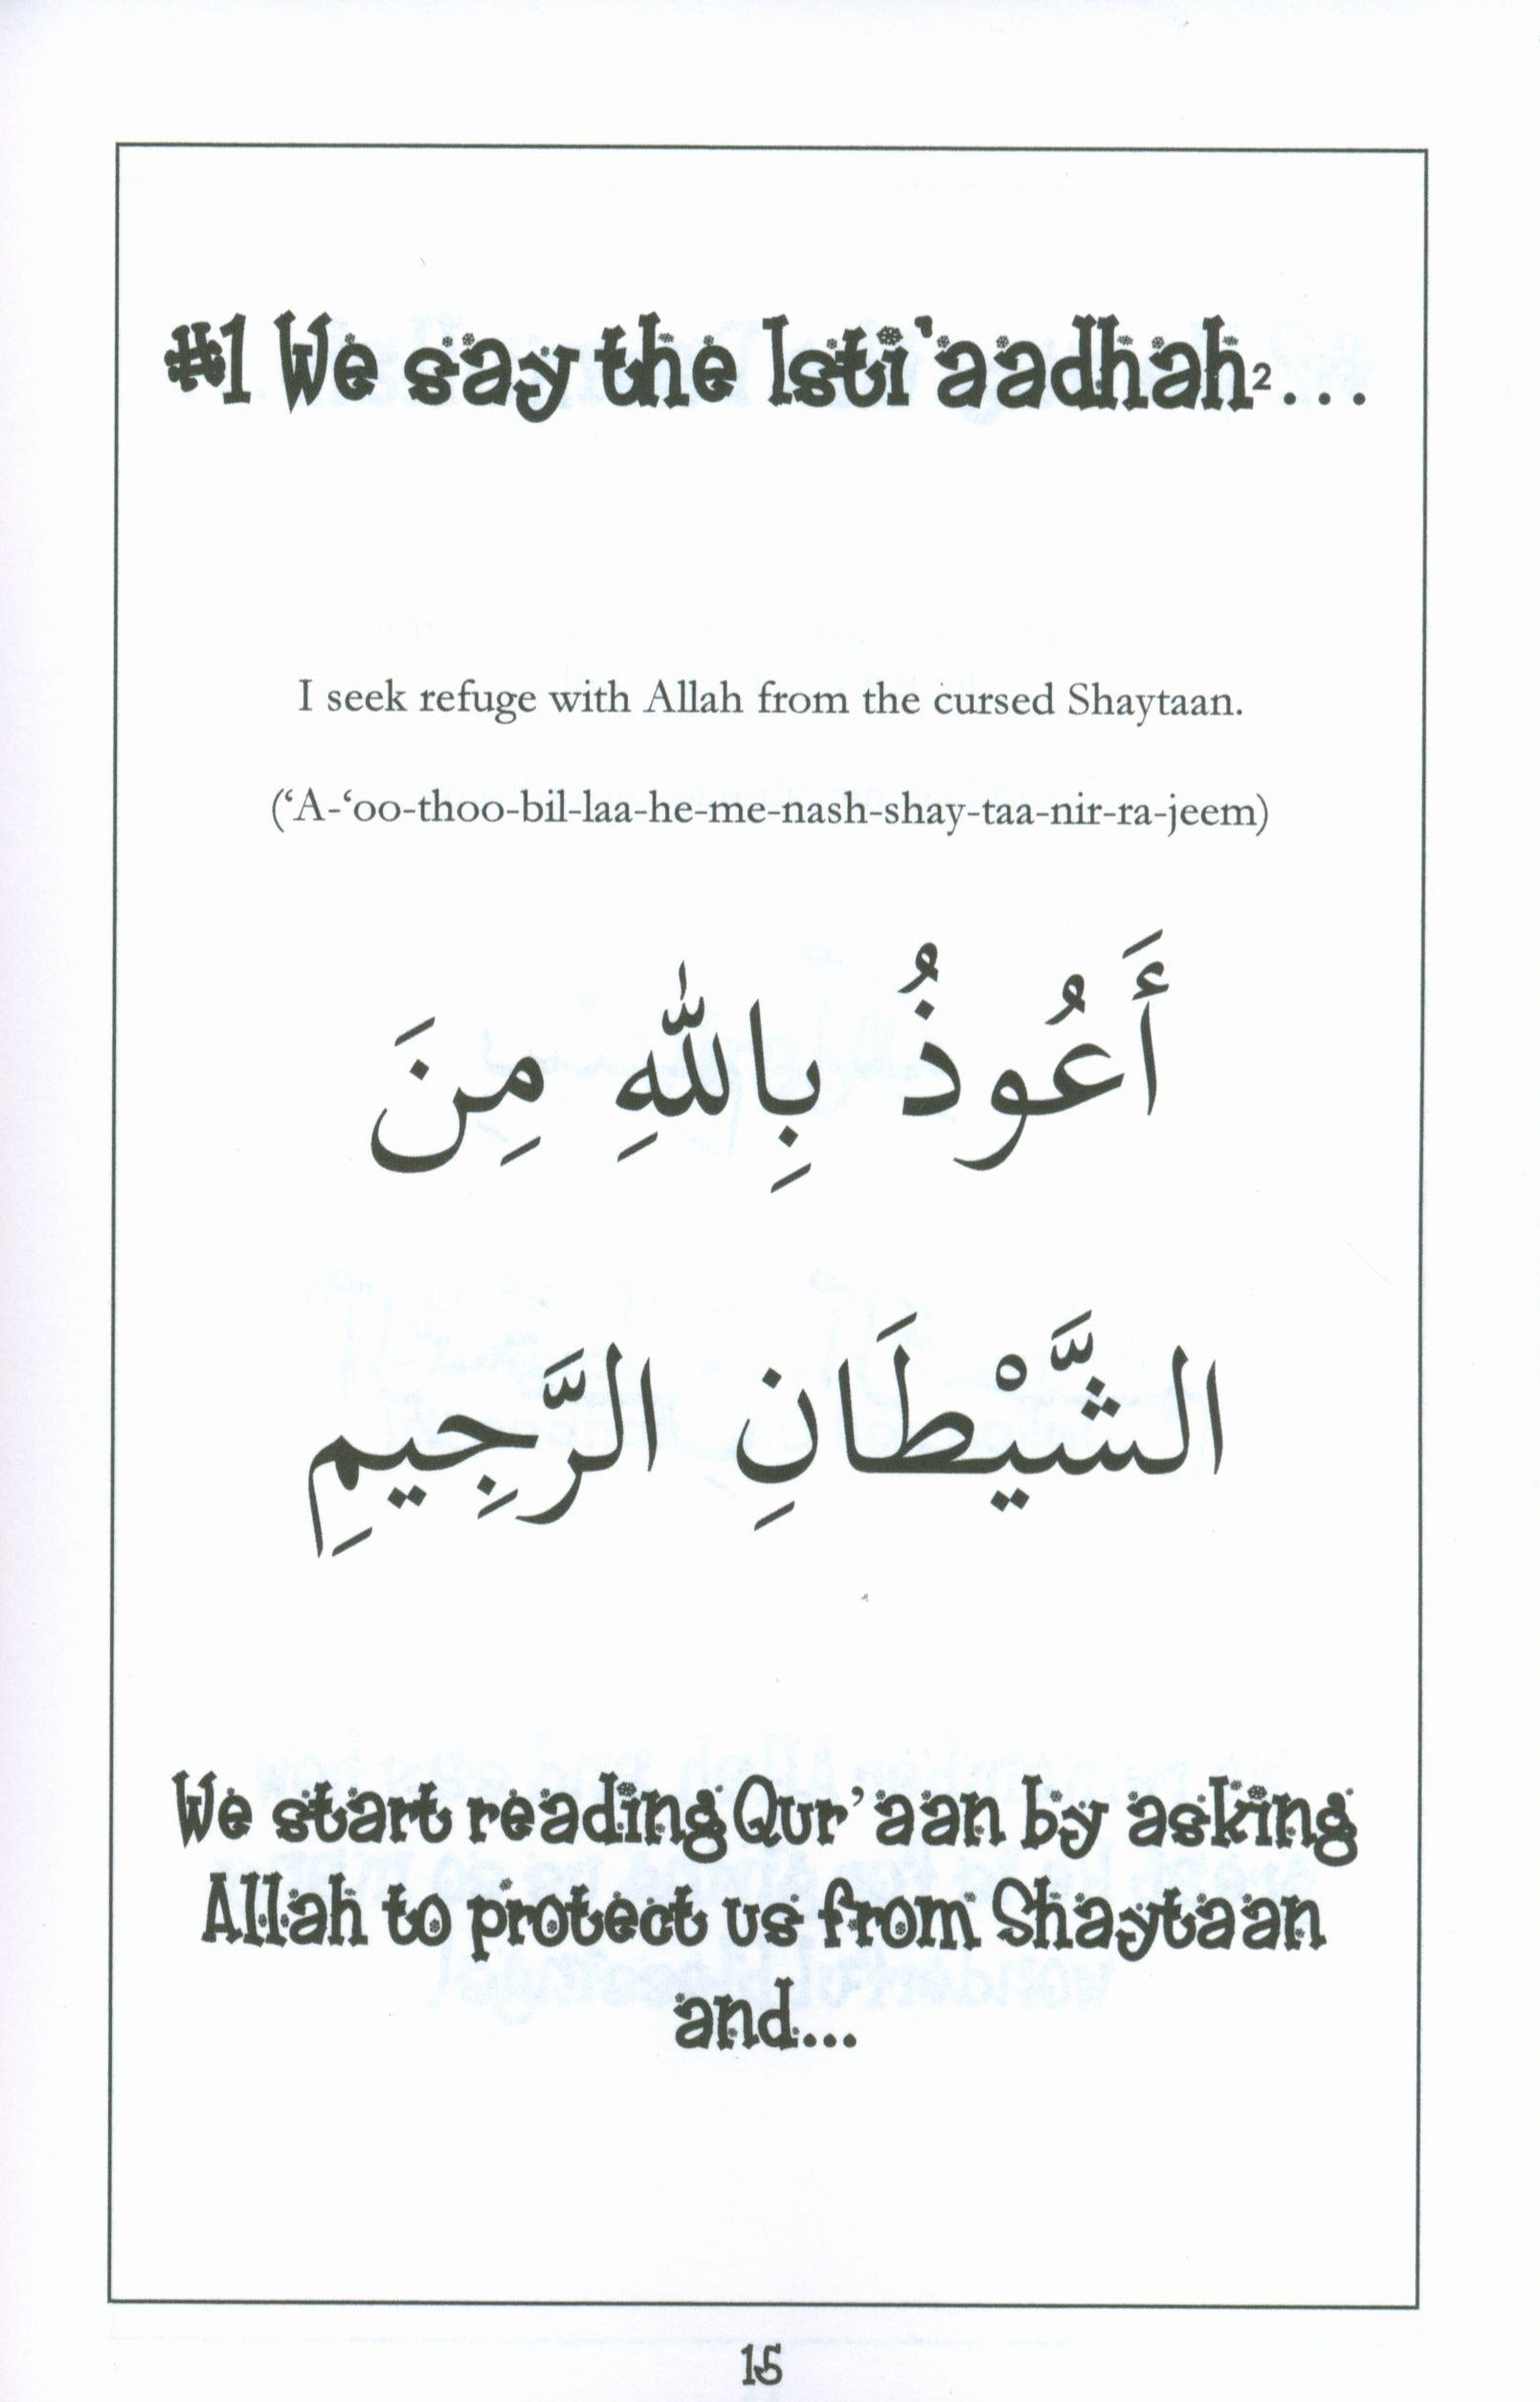 Mini Tafseer Book Suratul Qaari'ah (Surah 101)